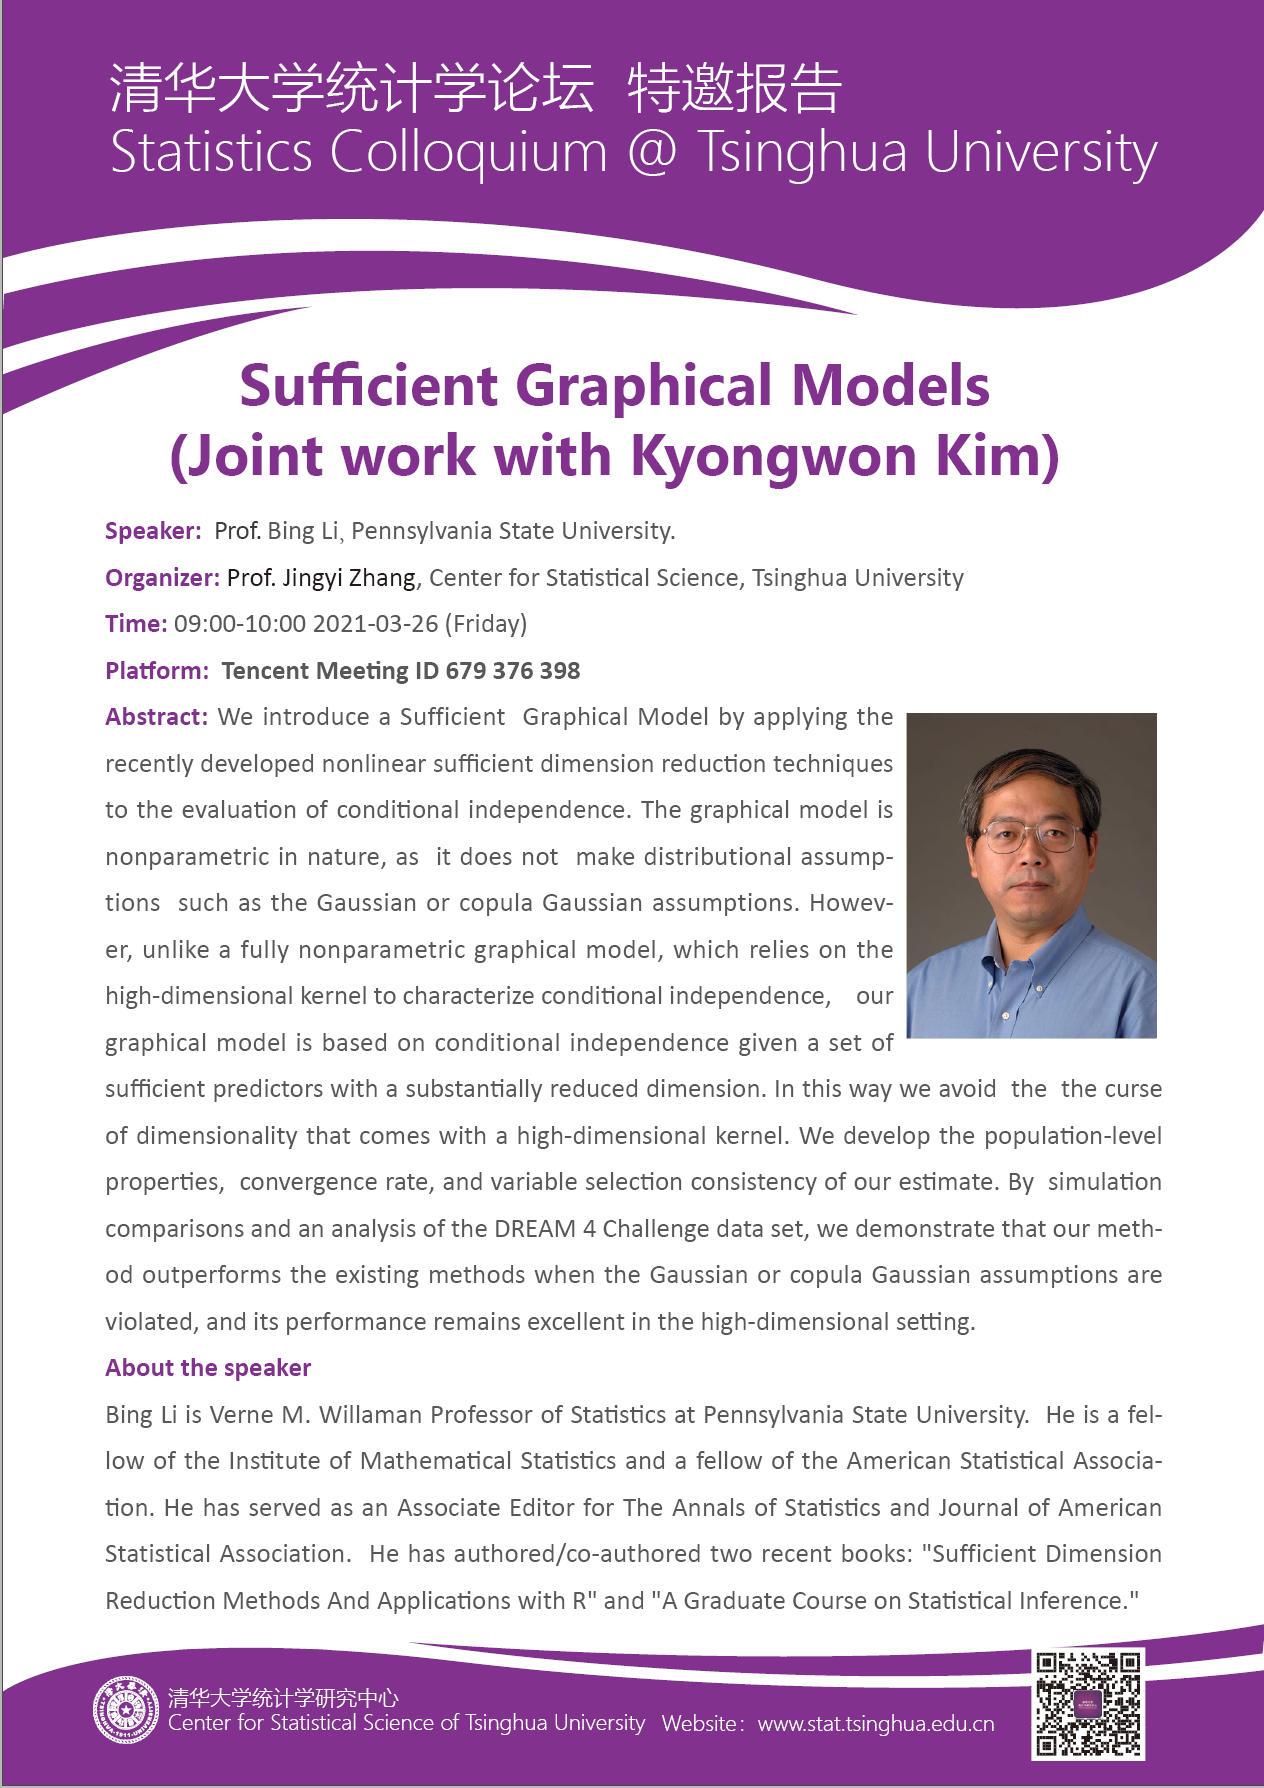 【统计学论坛】Sufficient Graphical Models (Joint work with Kyongwon Kim)